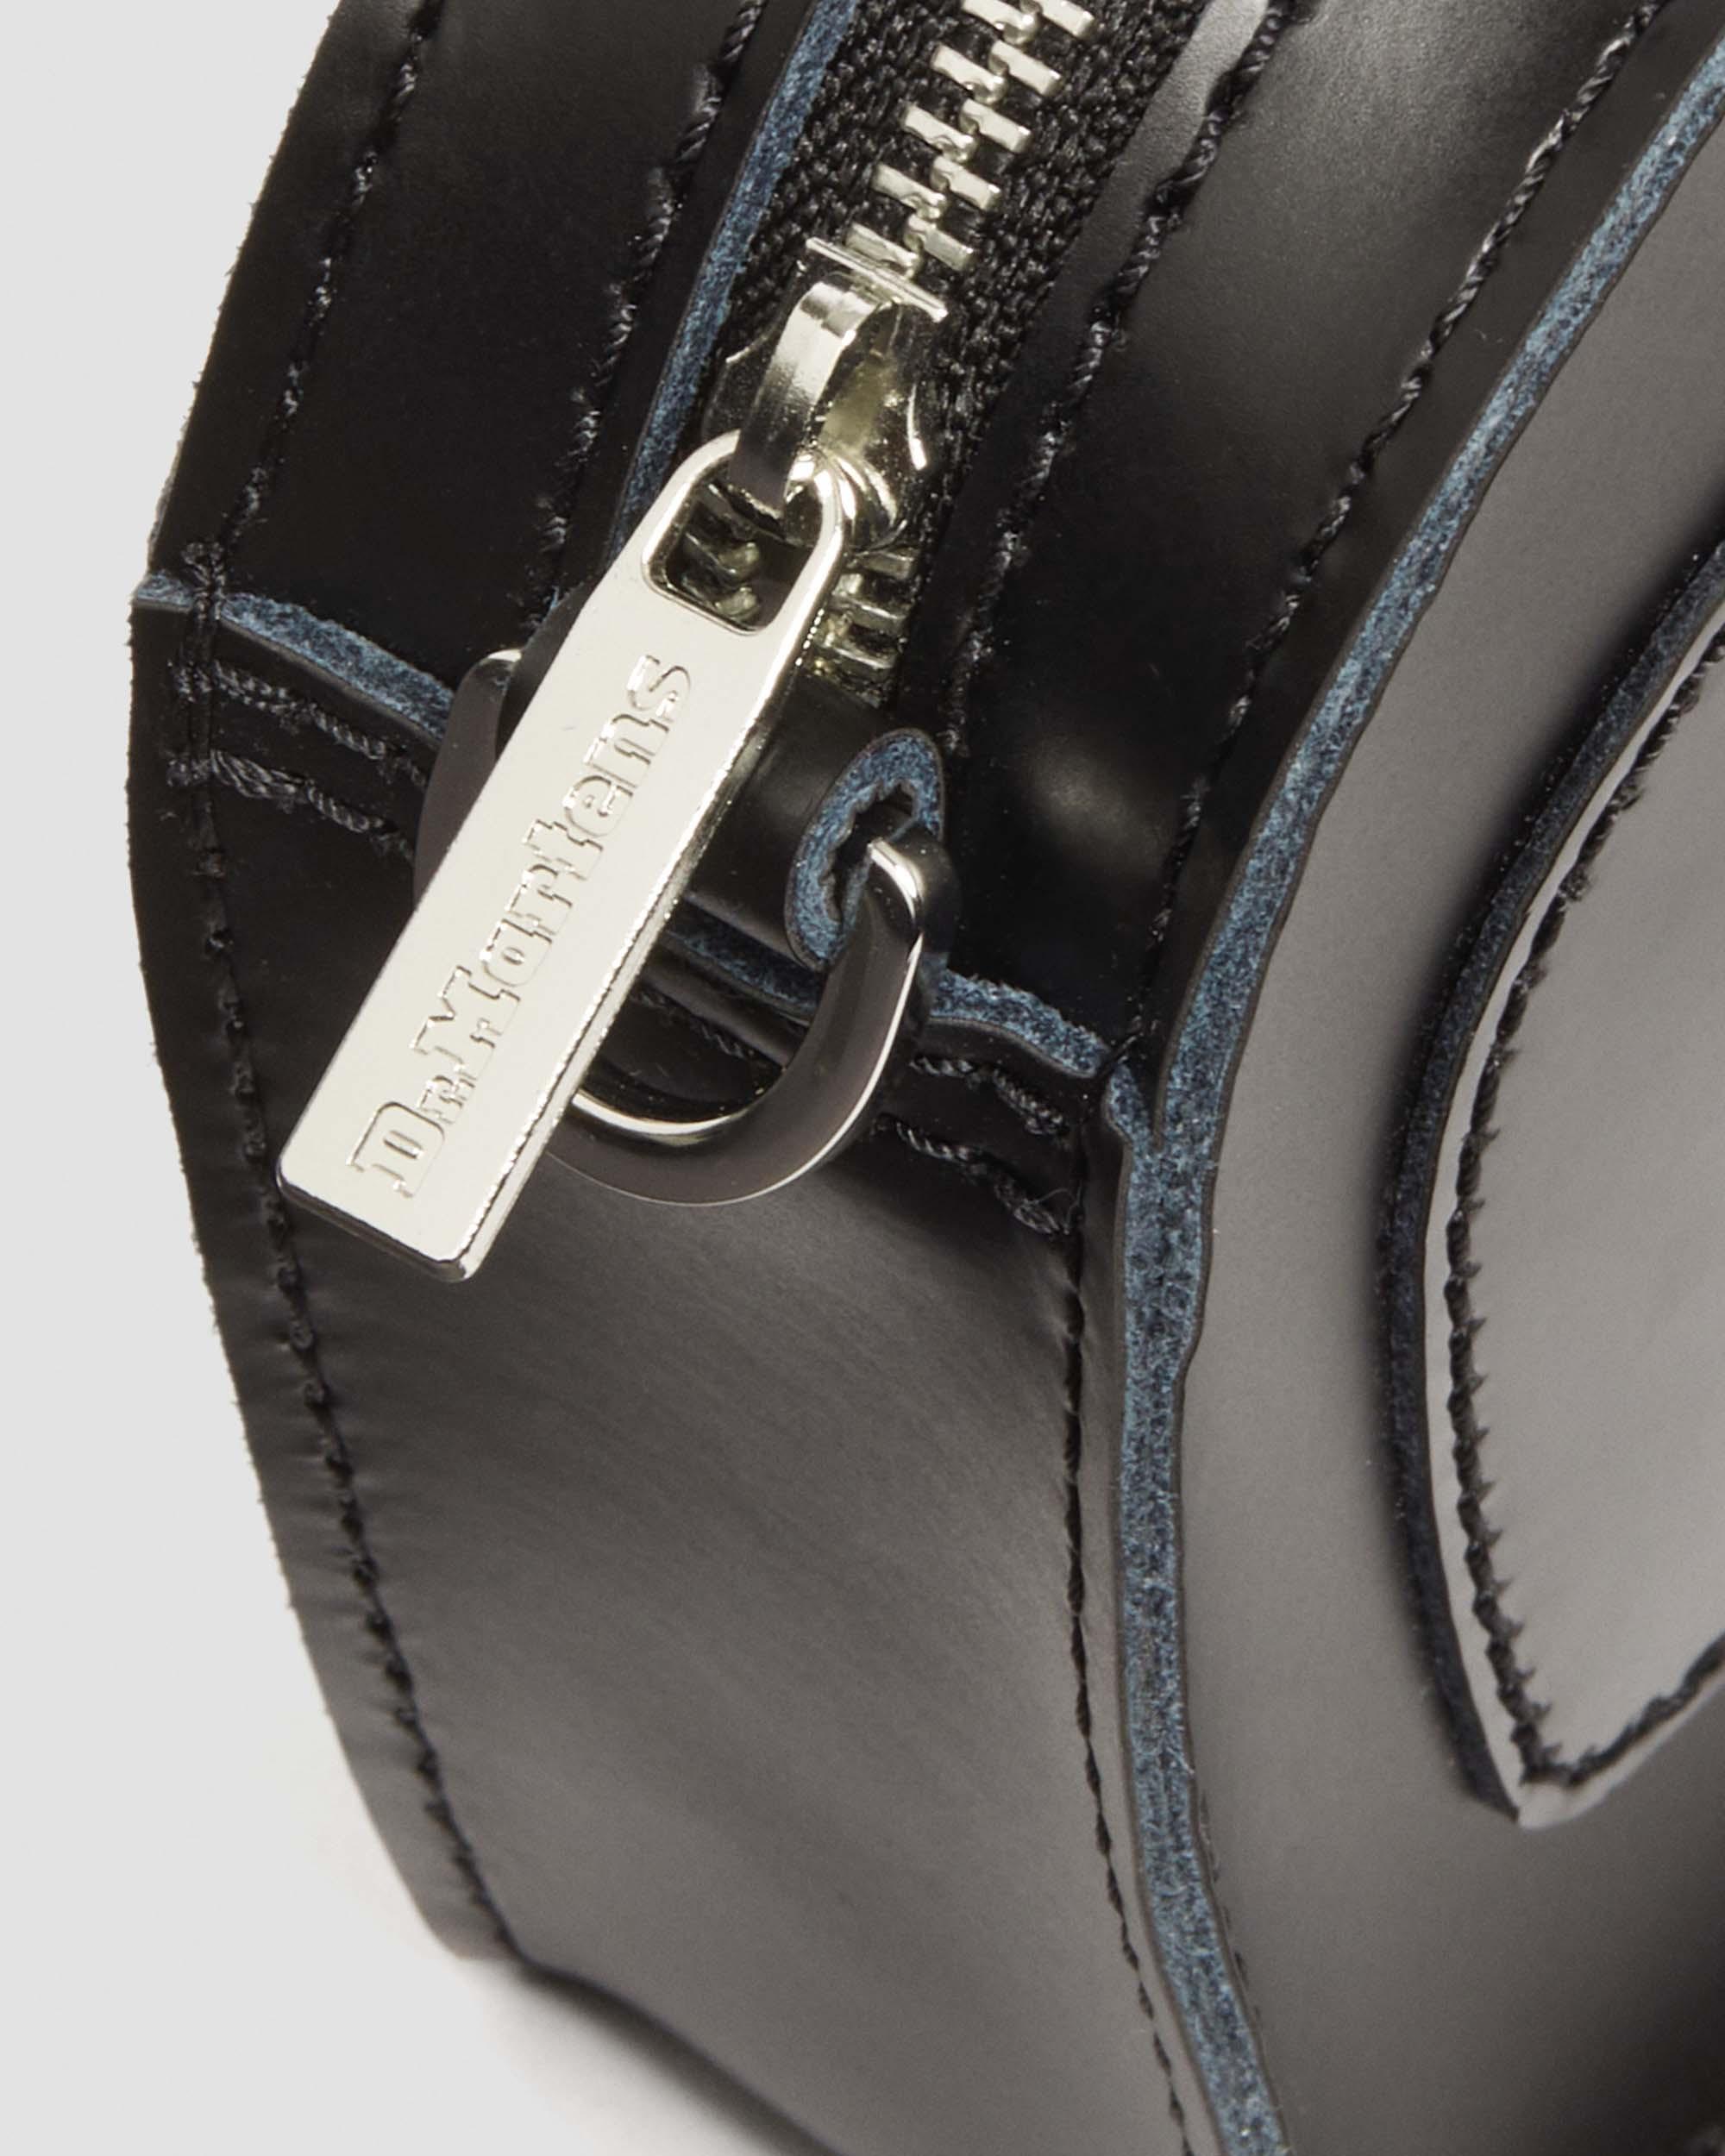 Mini Heart Shaped Kiev & Patent Leather Bag in Black